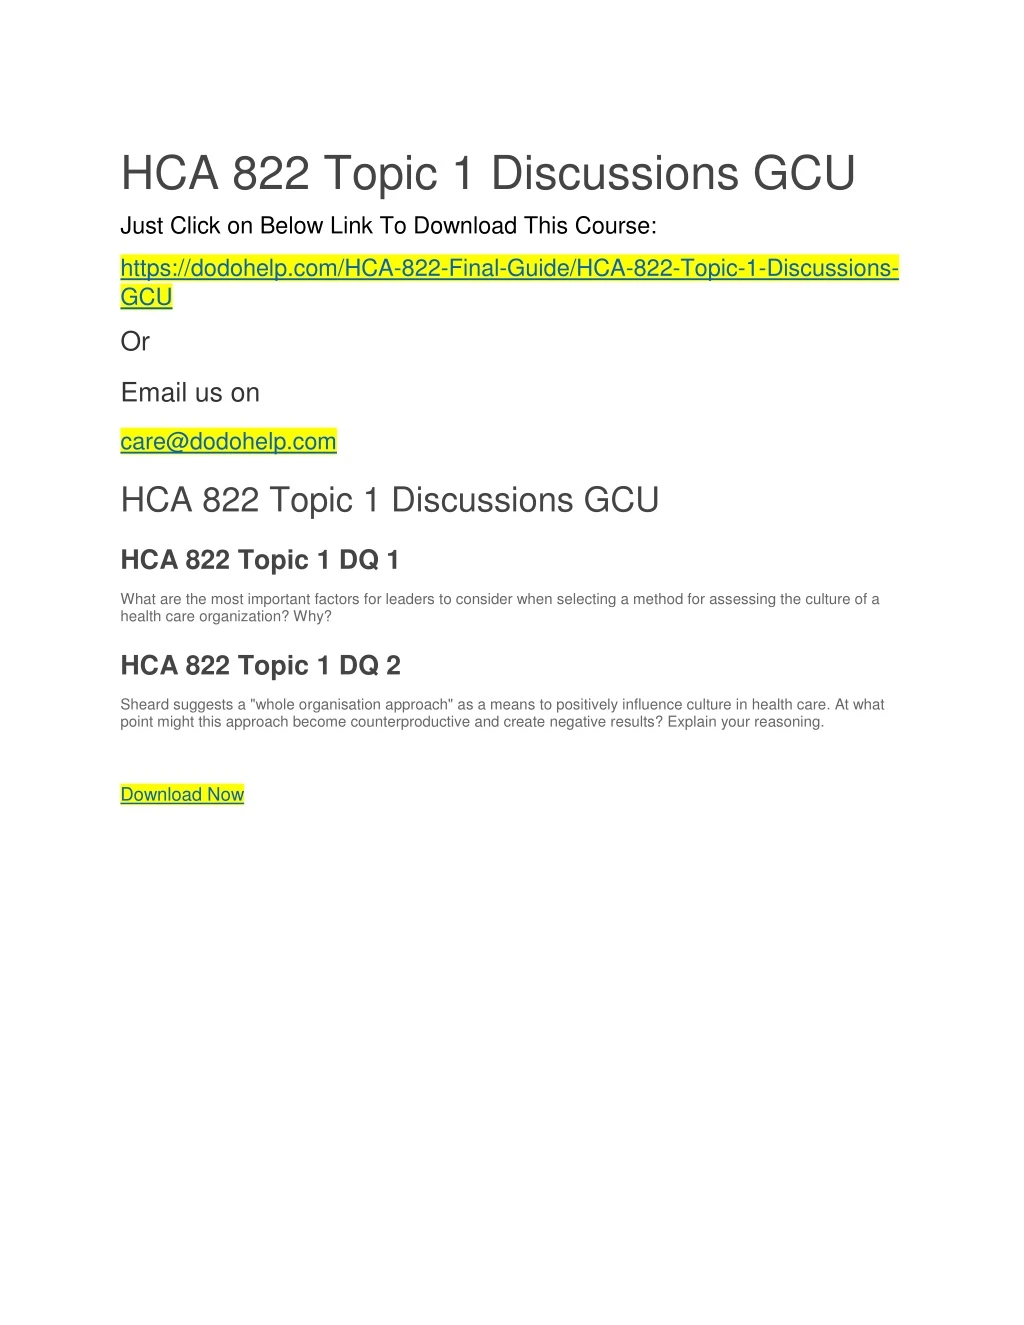 hca 822 topic 1 discussions gcu just click